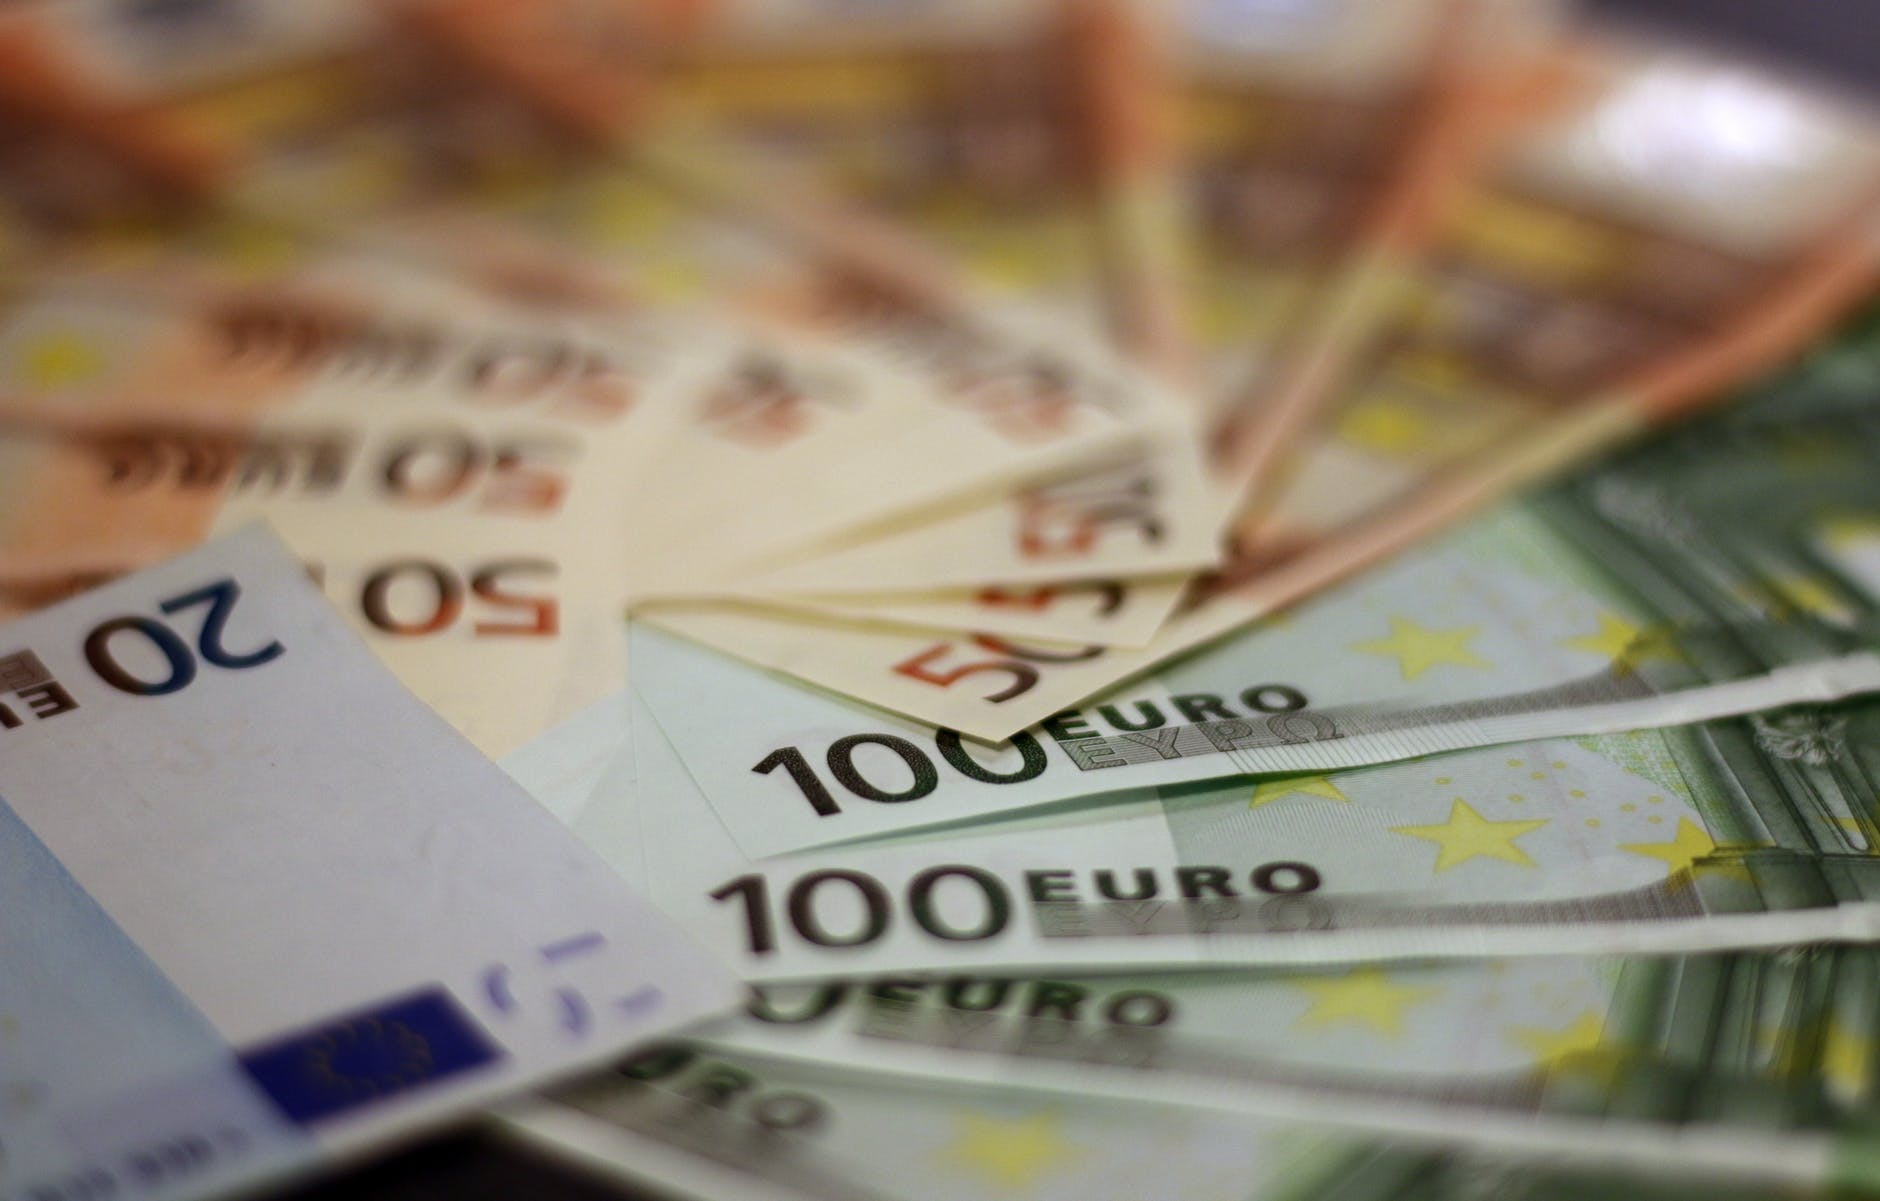 A possibilidade de se lançar um euro digital é discutida pelos países que utilizam a moeda